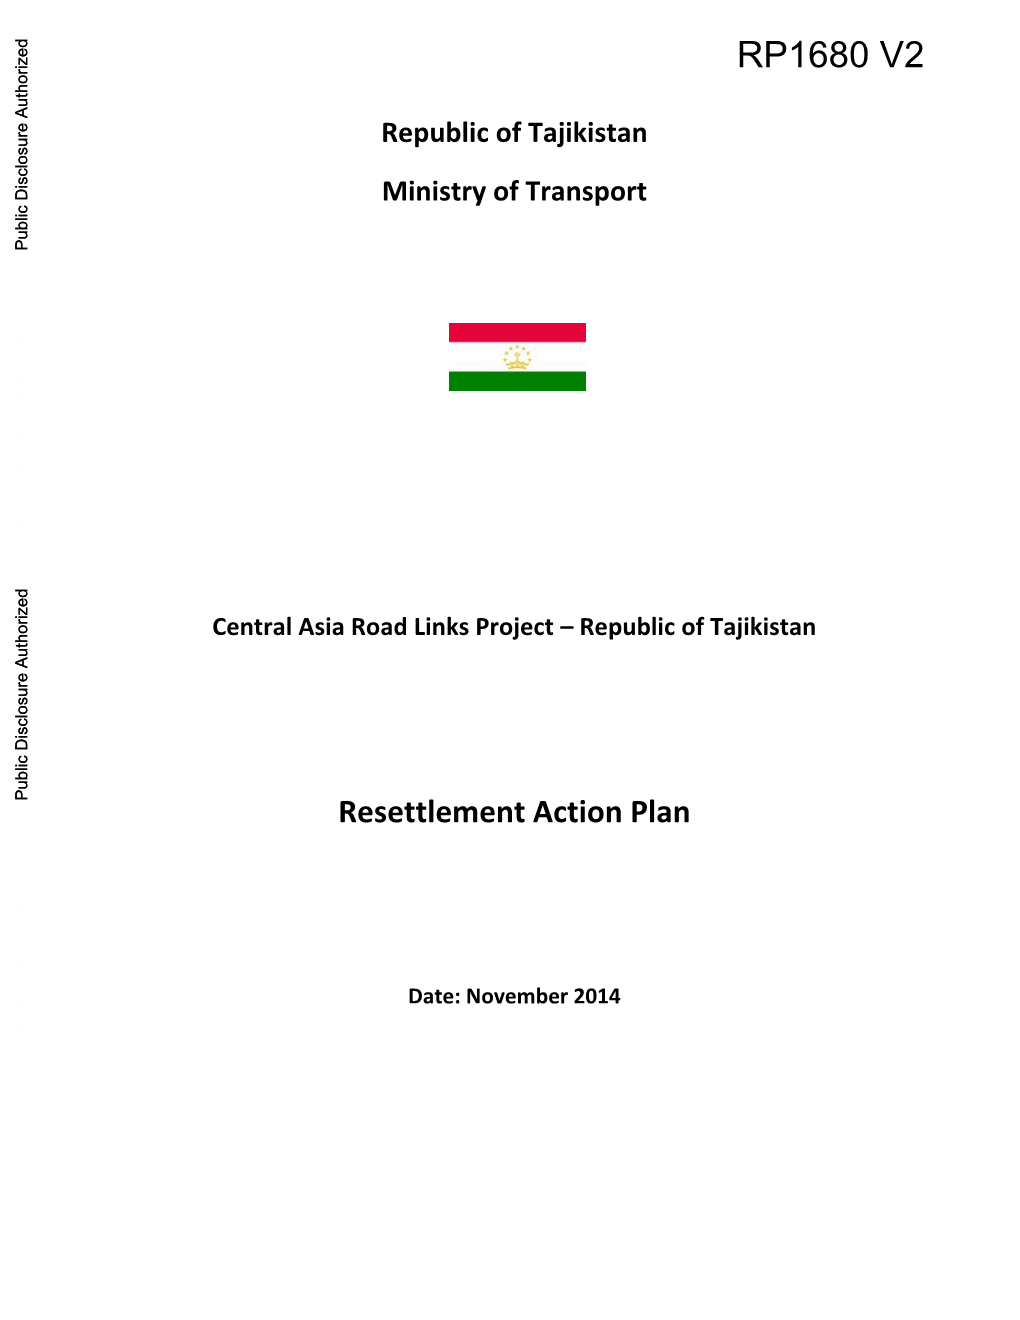 Republic of Tajikistan Ministry of Transport